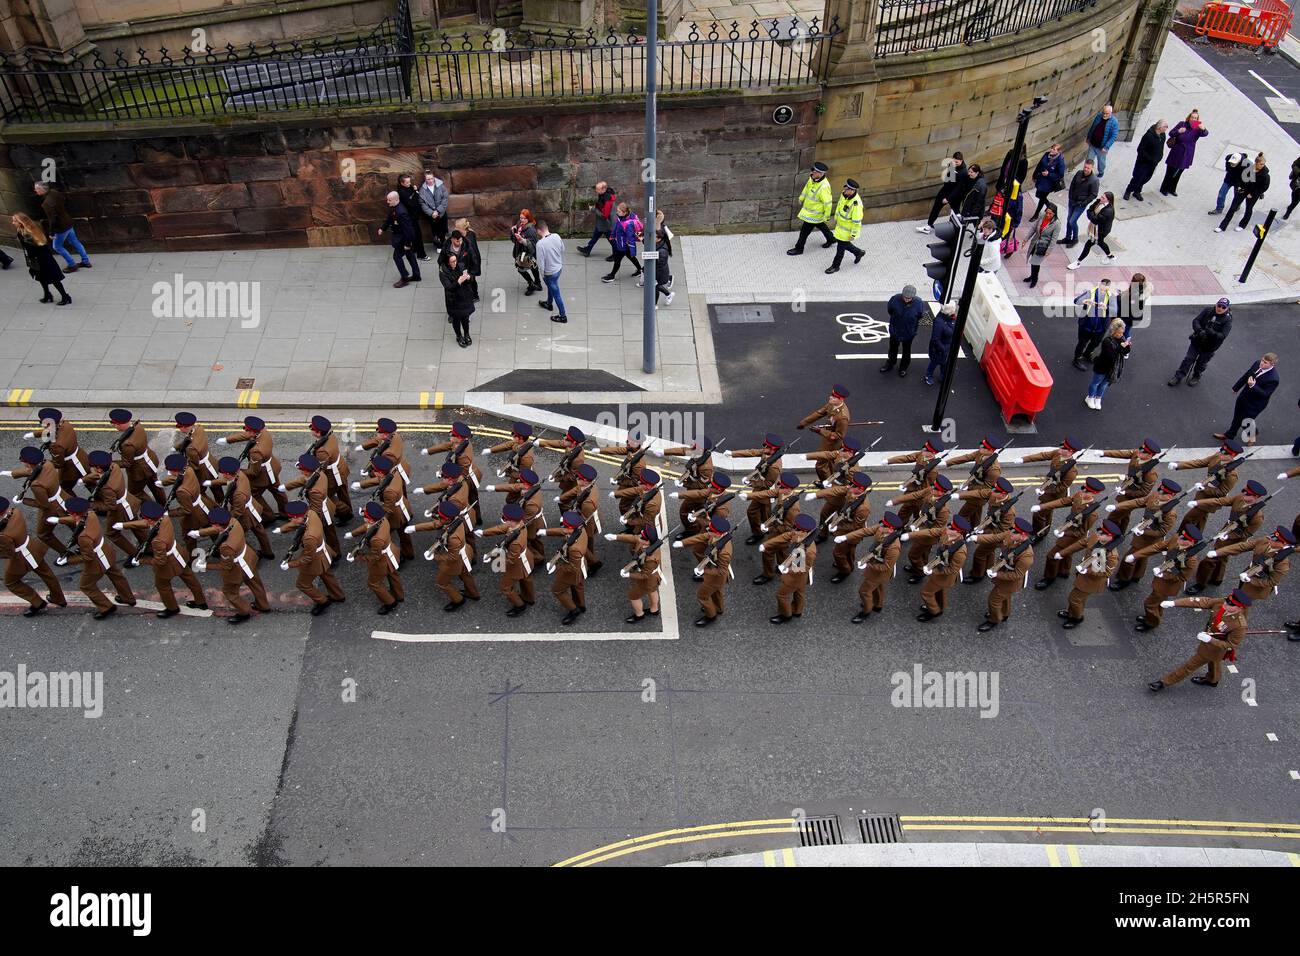 Das 1. Bataillon des Regiments des Herzogs von Lancaster marschiert durch die Straßen von Liverpool zur Our Lady & Saint Nichola Church, bevor es ein zweiminütiges Schweigen zur Erinnerung an den Kriegsgefallenen am Waffenstillstandstag beobachtet. Bilddatum: Donnerstag, 11. November 2021. Stockfoto